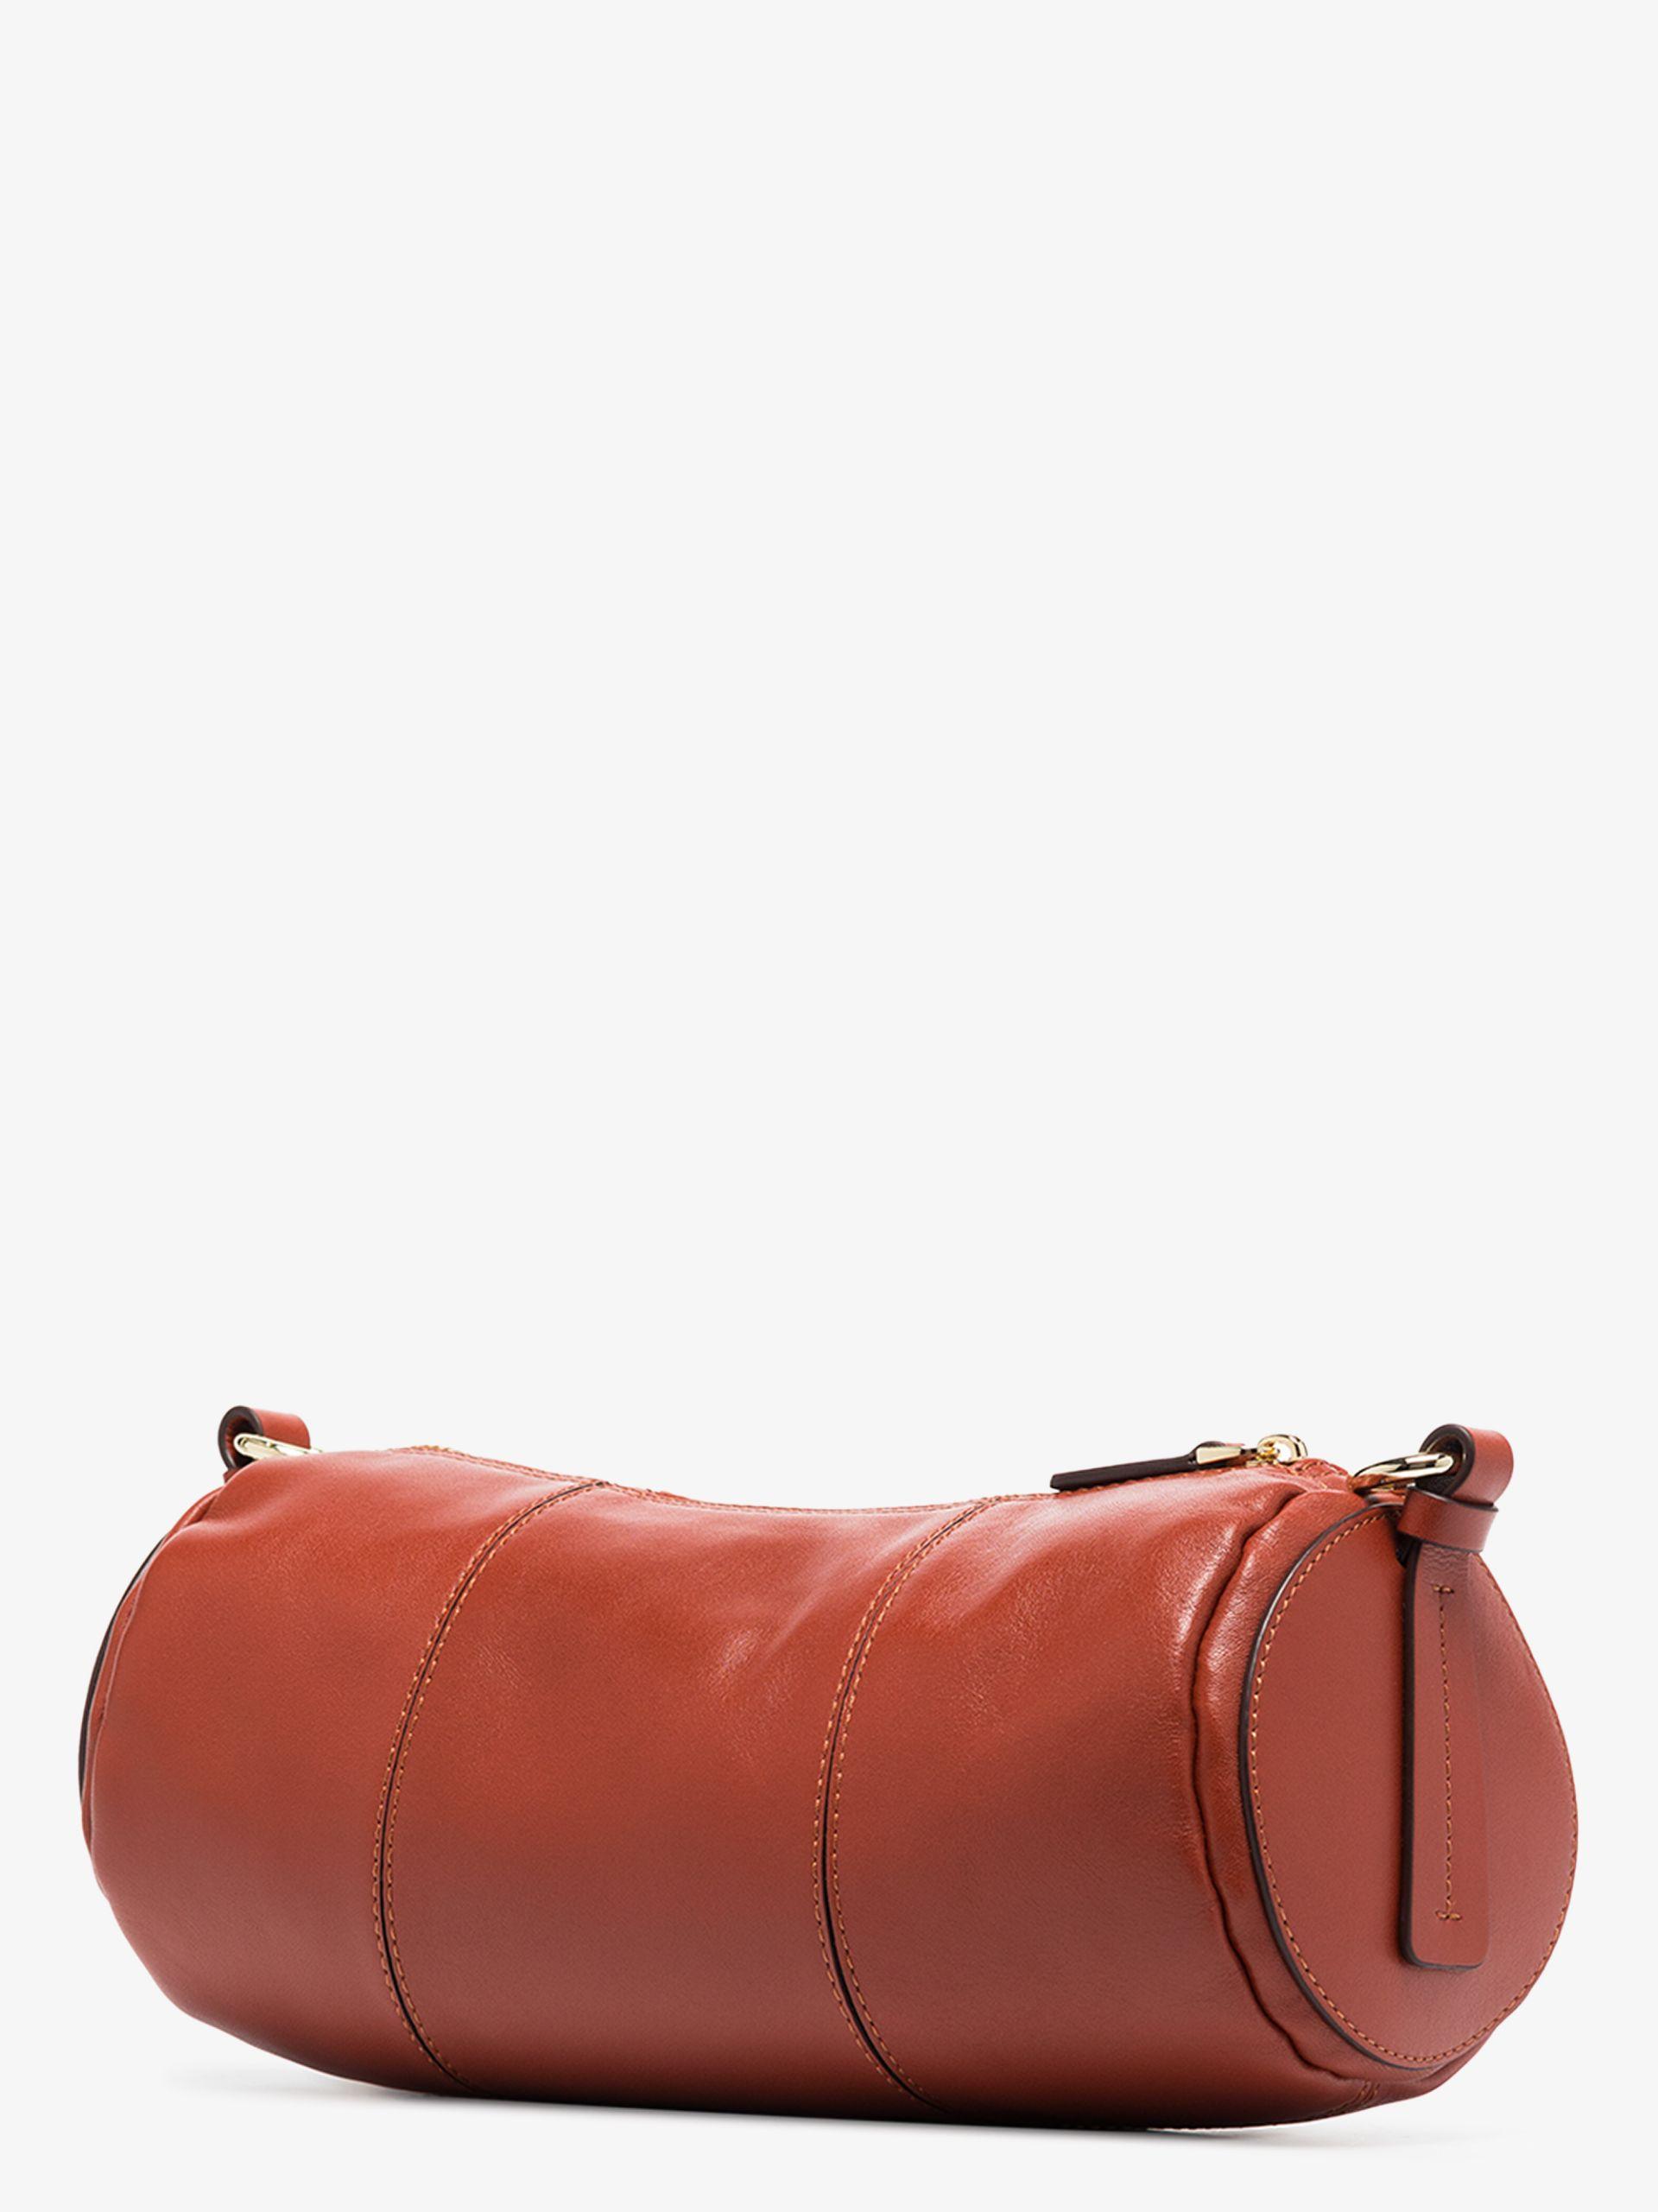 MANU Atelier Leather Cylinder Shoulder Bag in Red - Save 45% | Lyst